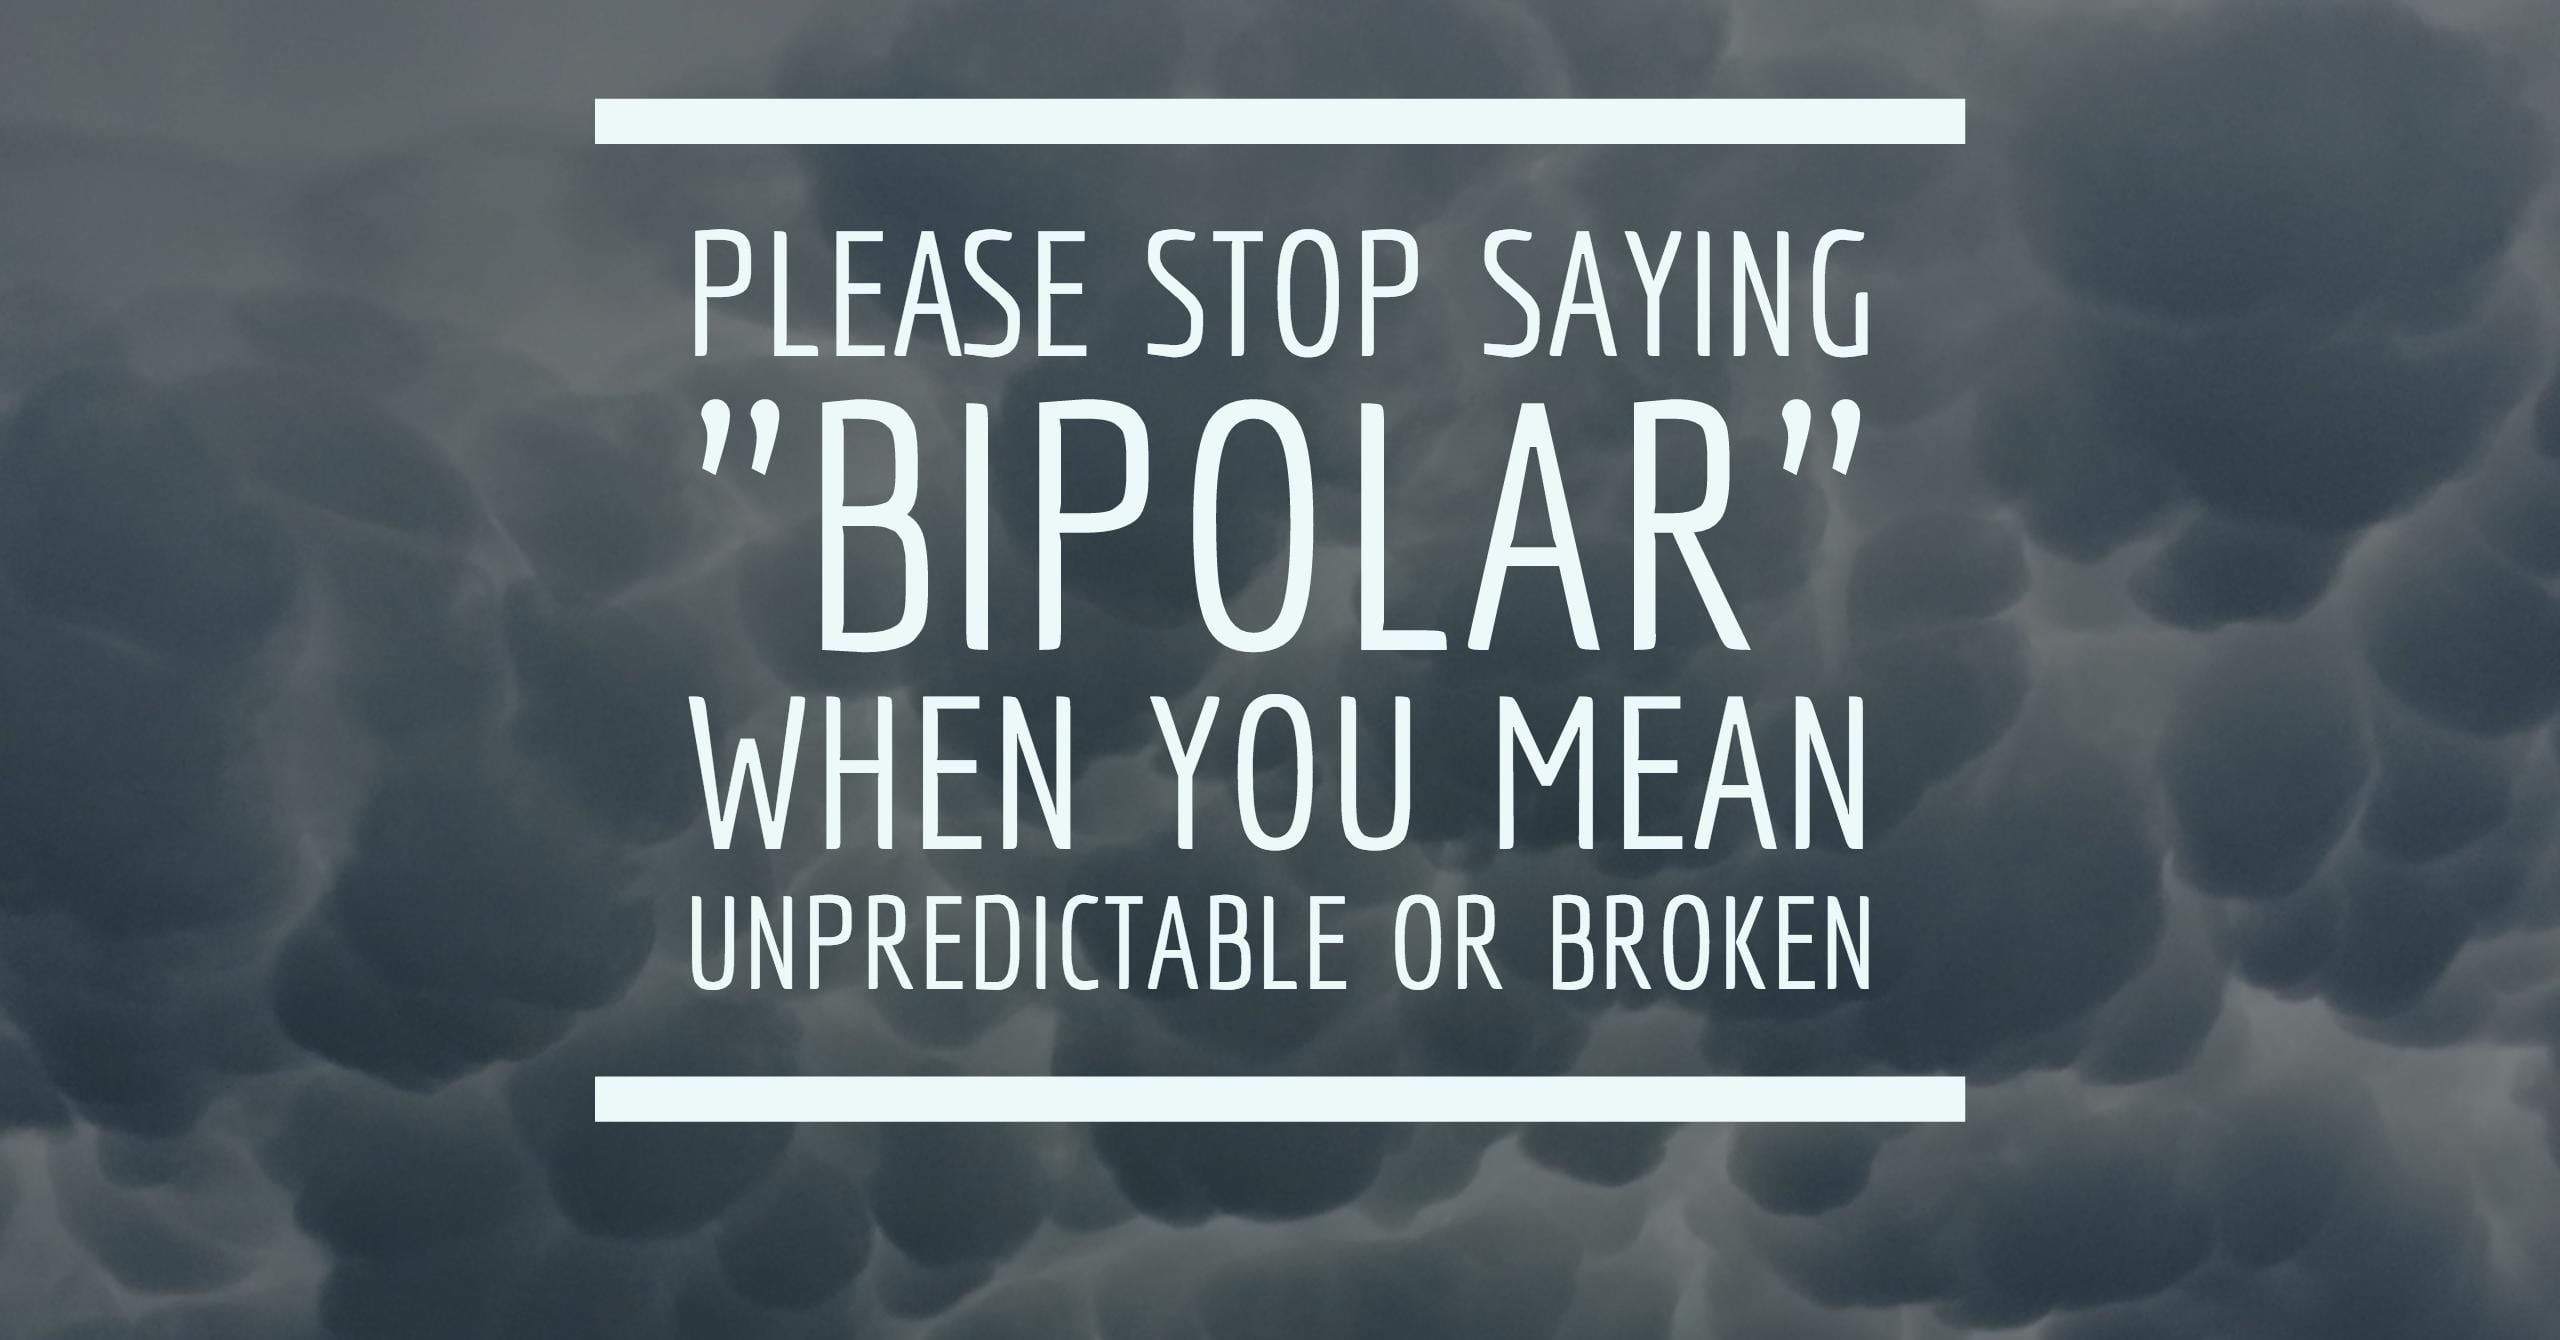 Please Stop Saying “Bipolar” When You Mean Unpredictable or Broken